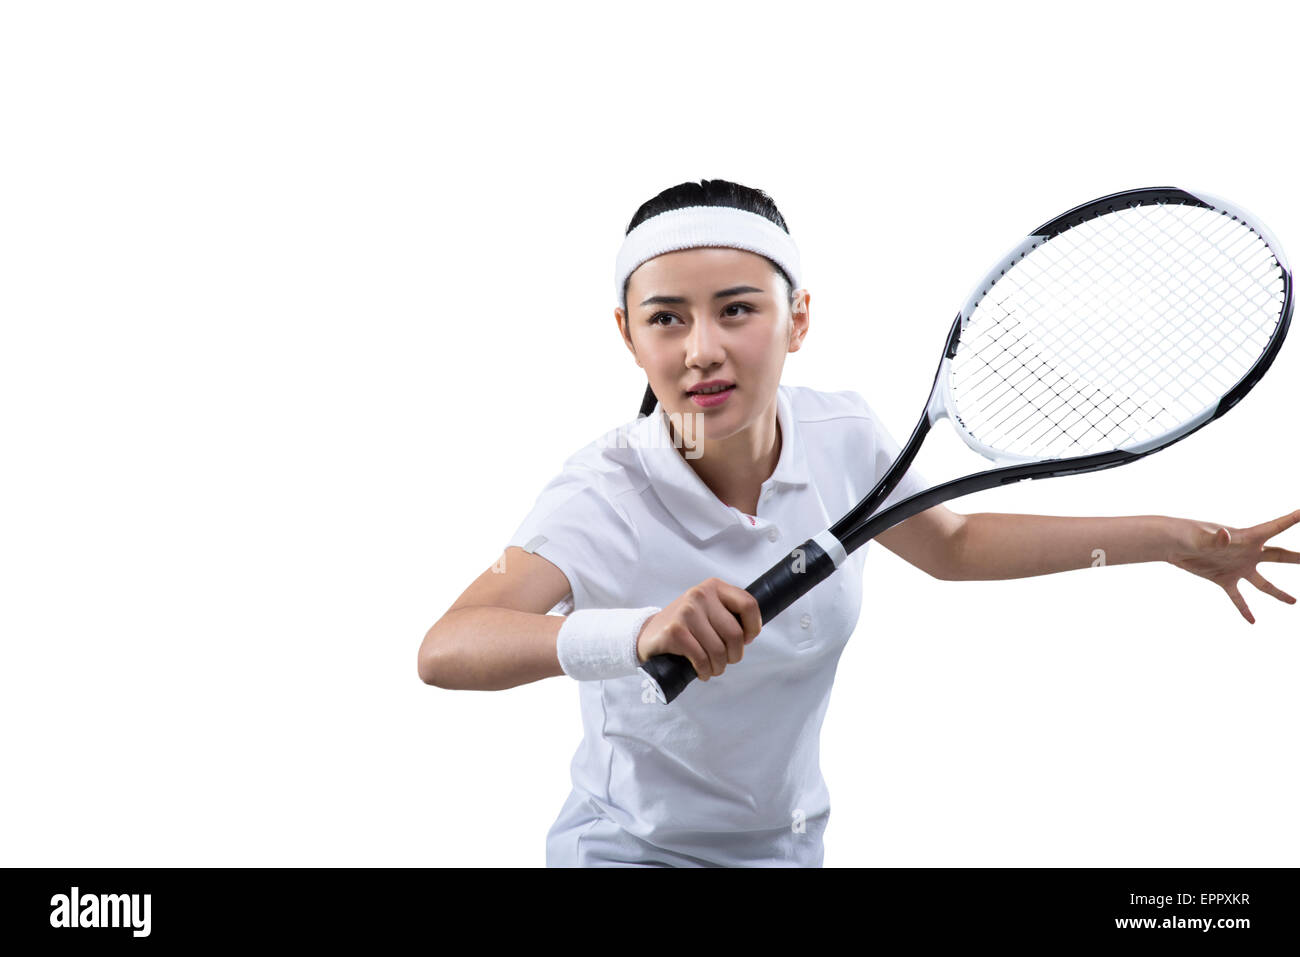 Tennis player prêt à frapper ball, portrait Banque D'Images